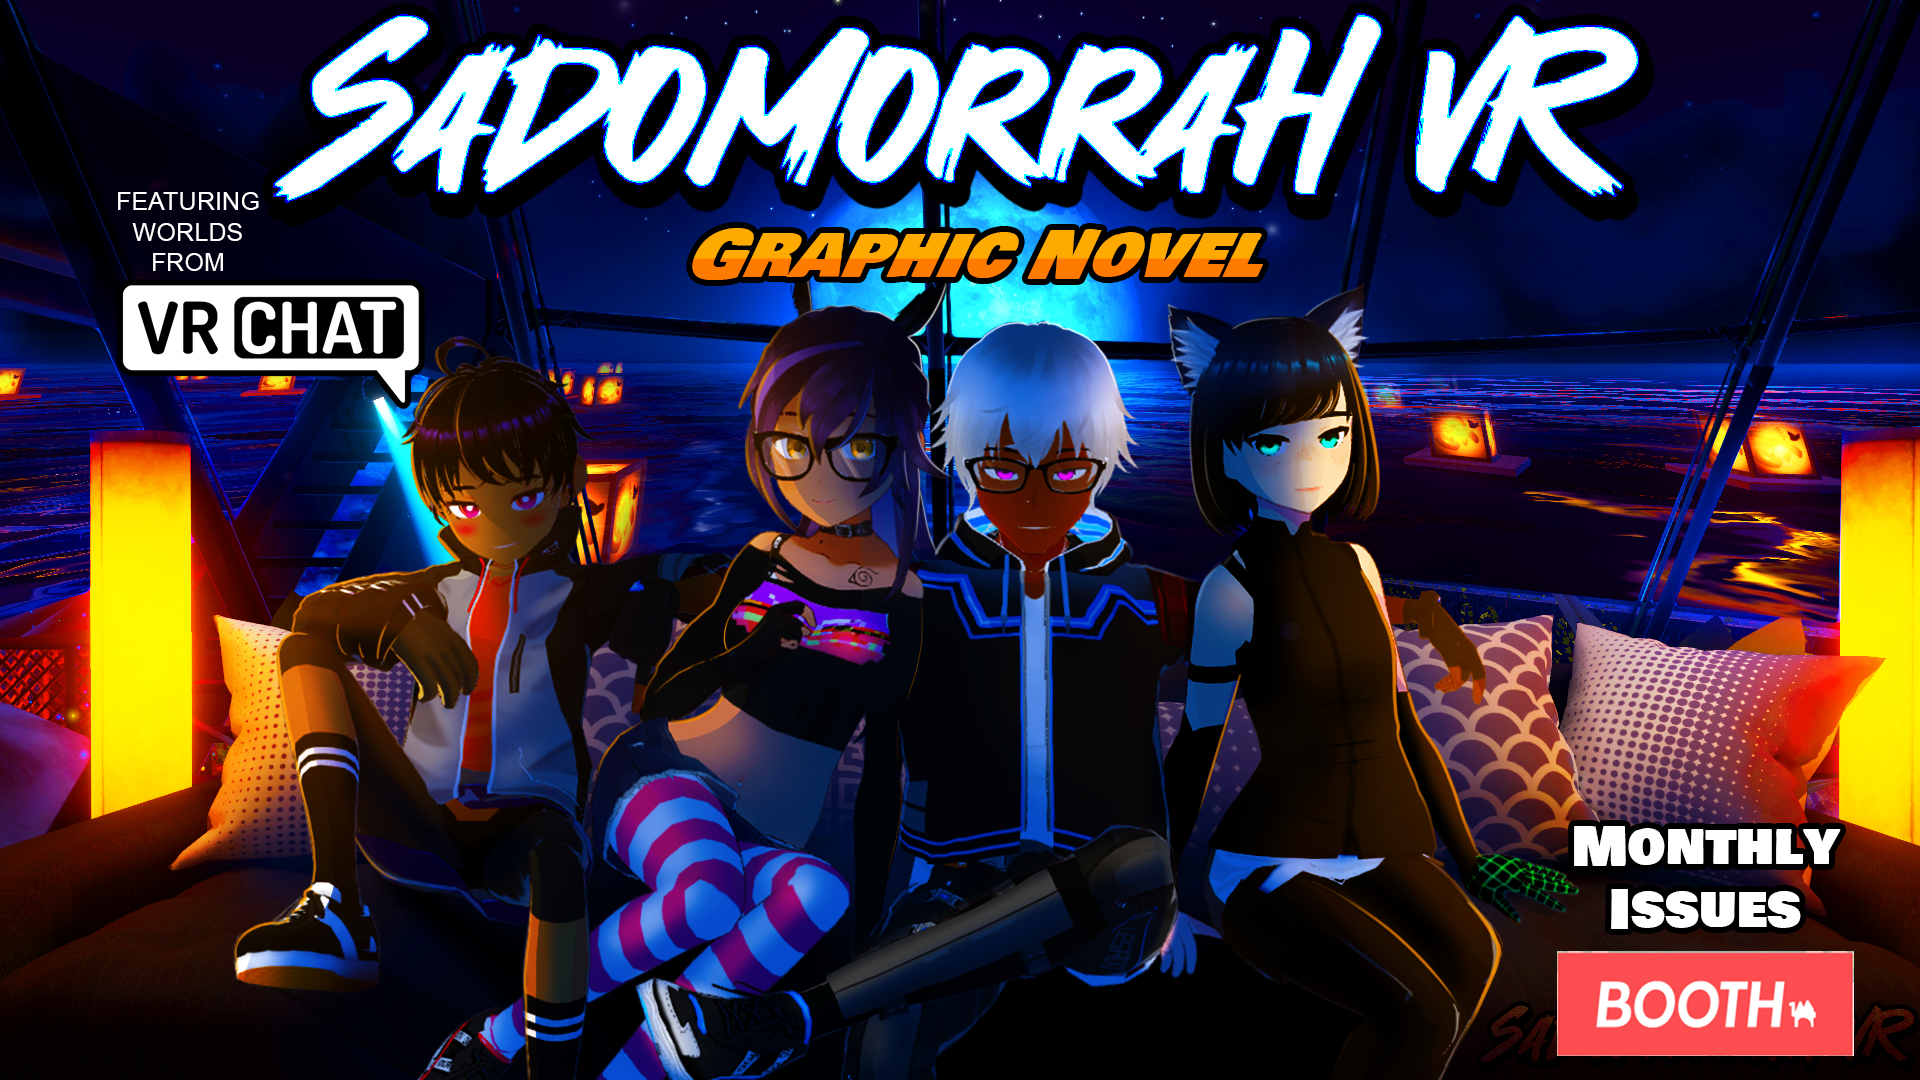 SadoMorrahVR | Metaverse Manga